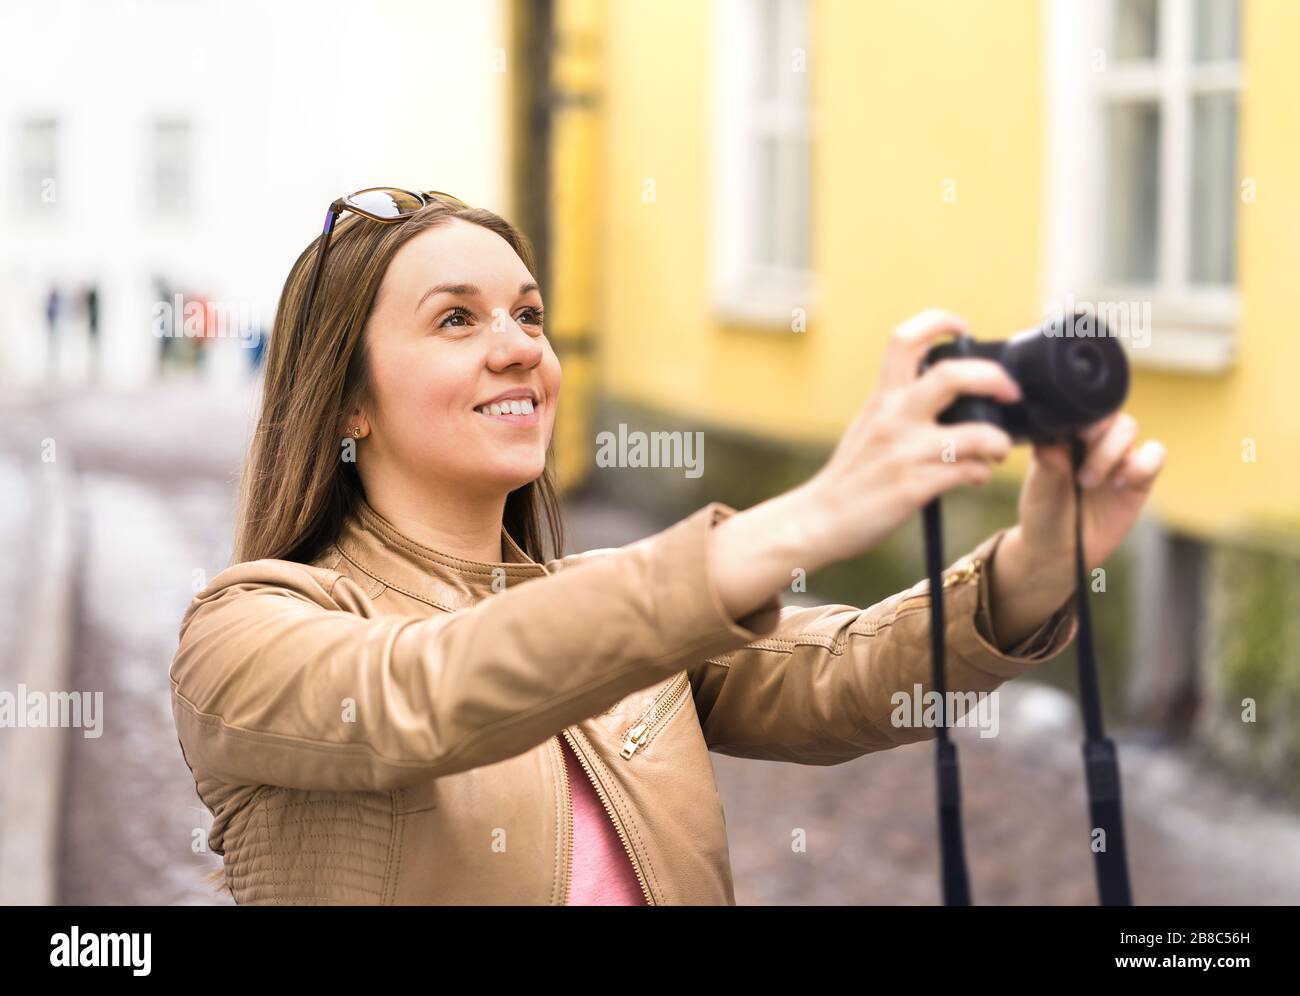 Glückliche Frau, die mit der Kamera fotografieren kann. Touristen im Urlaub in der City Street. Urlaubsbilder. Lächelnder Fotograf oder Hobbyfotograf. Stockfoto